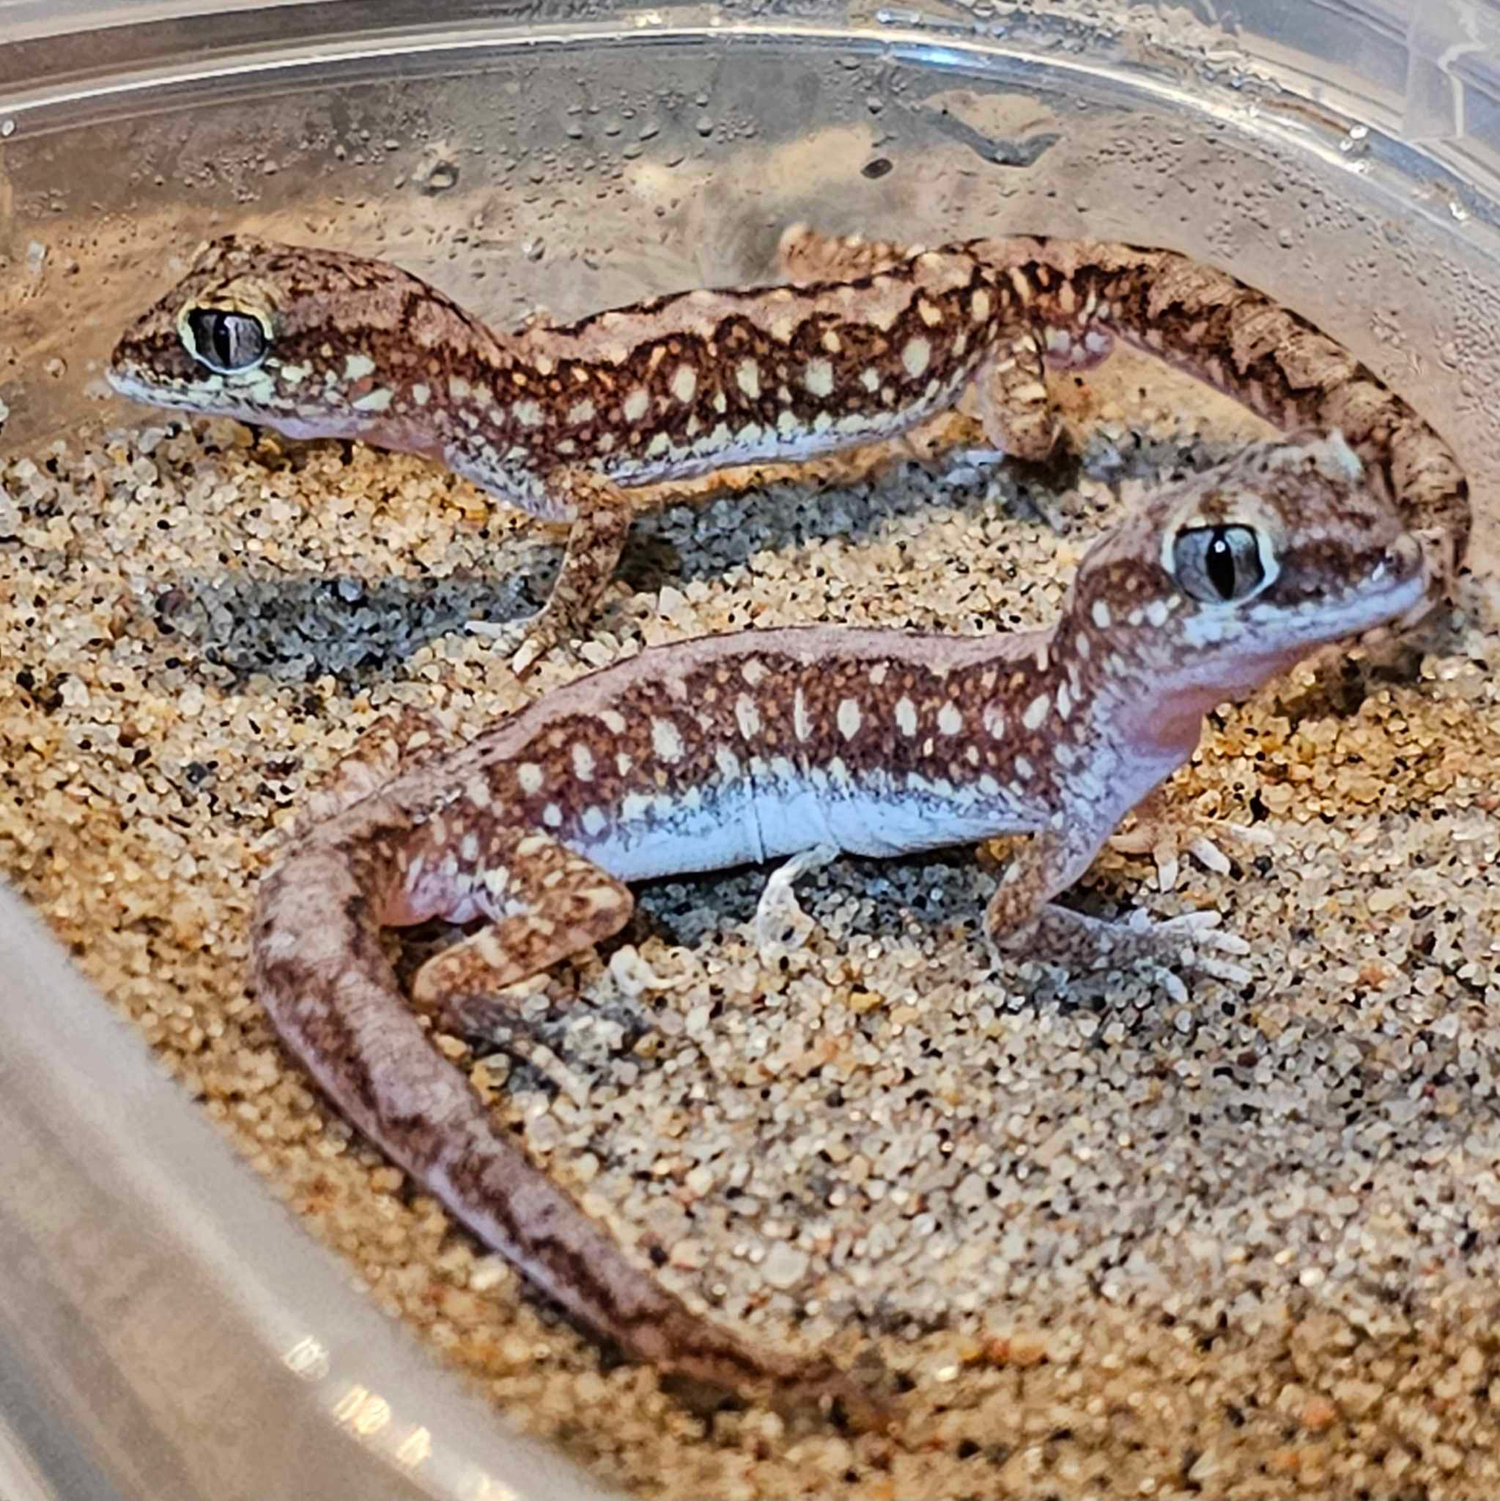 Other Geckos